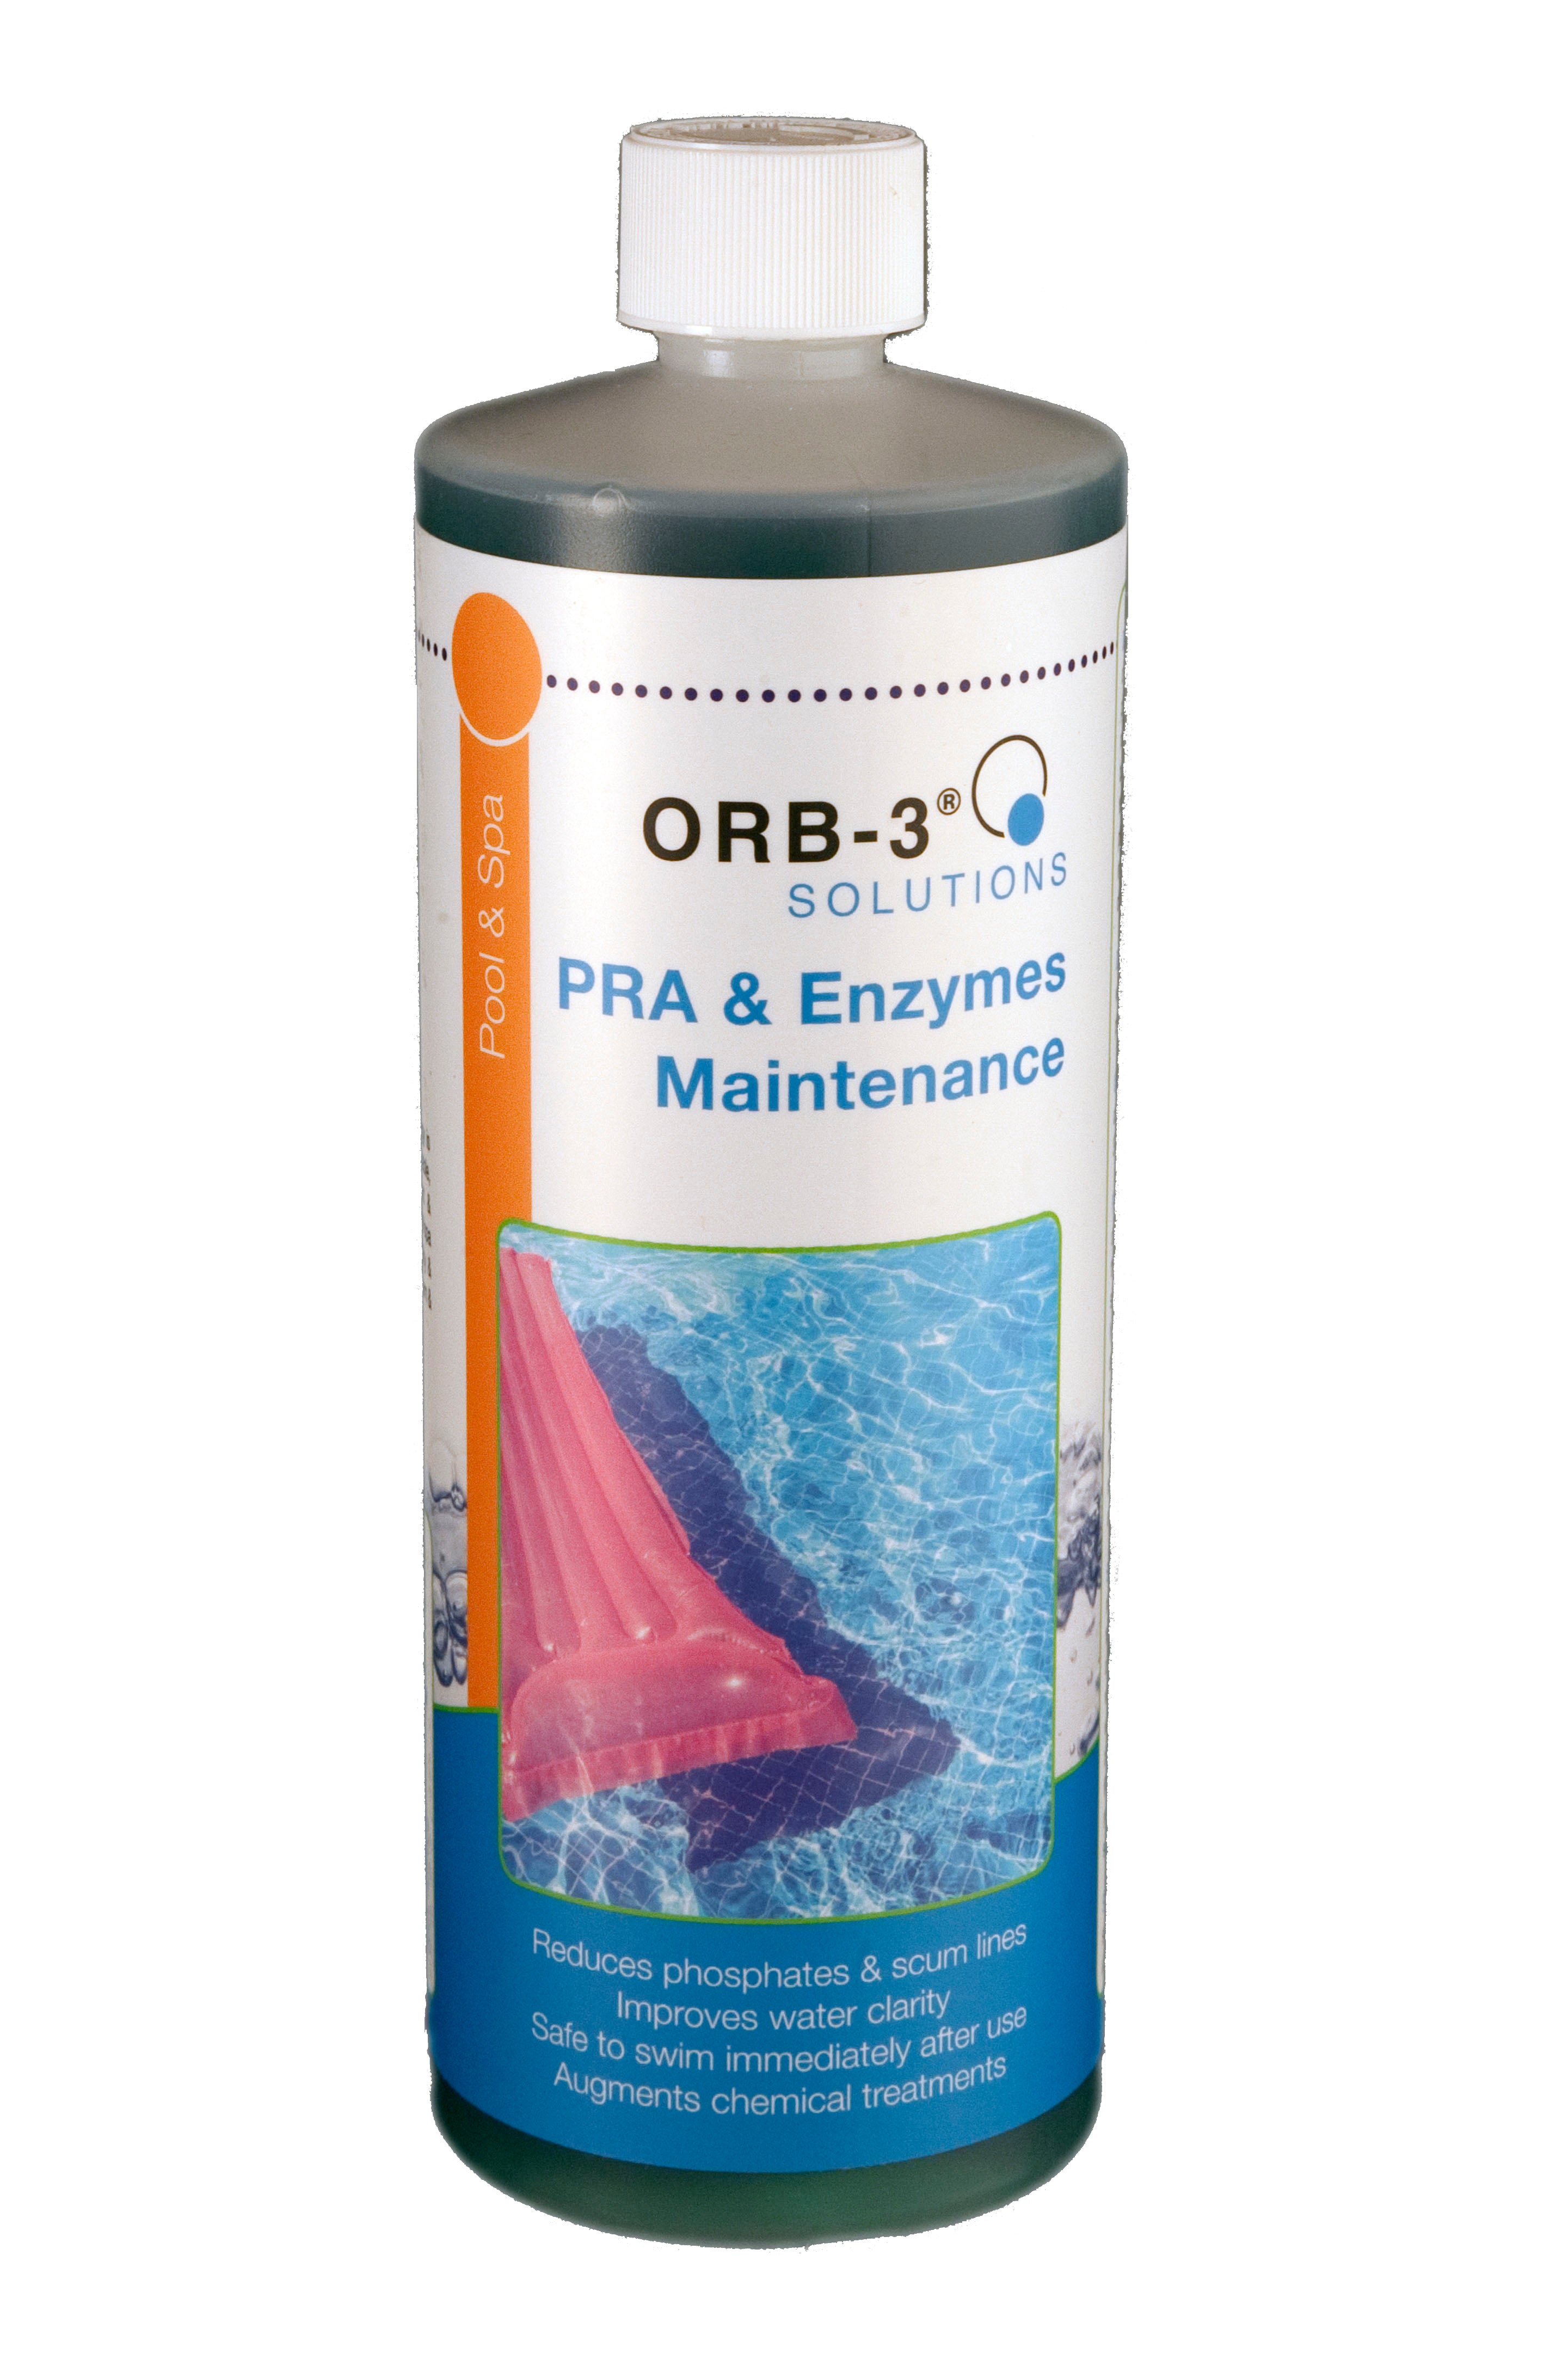 Orb-3 PRA & Enzymes Maintenance